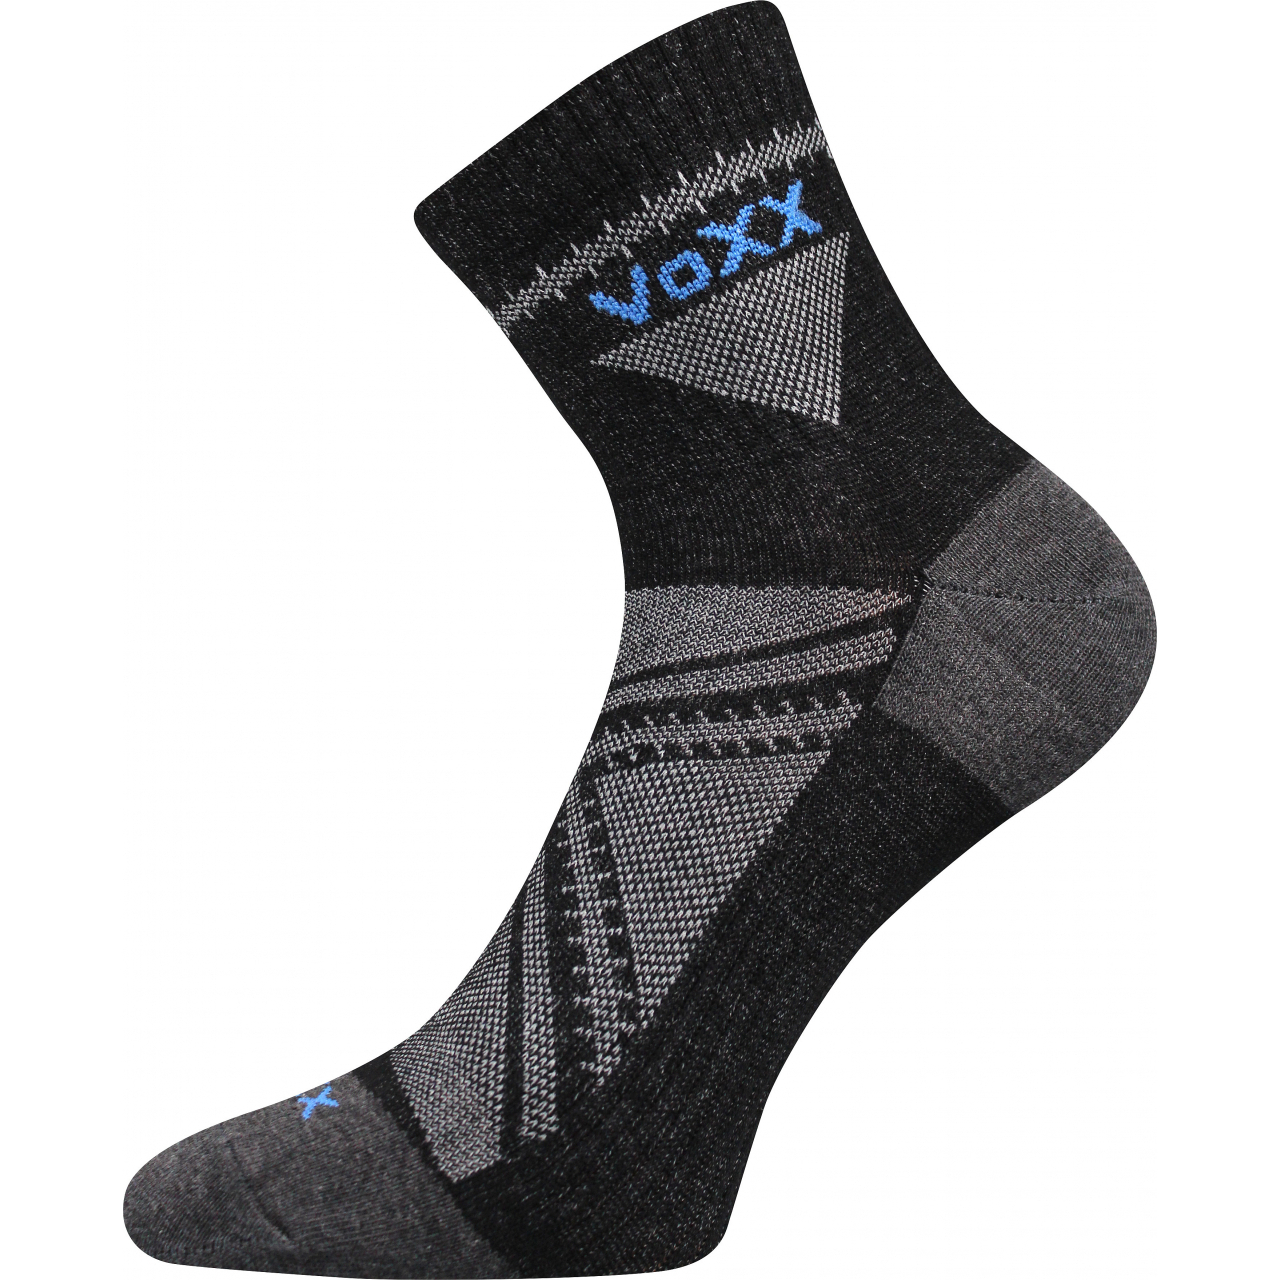 Ponožky sportovní unisex Voxx Rexon 01 - černé, 43-46